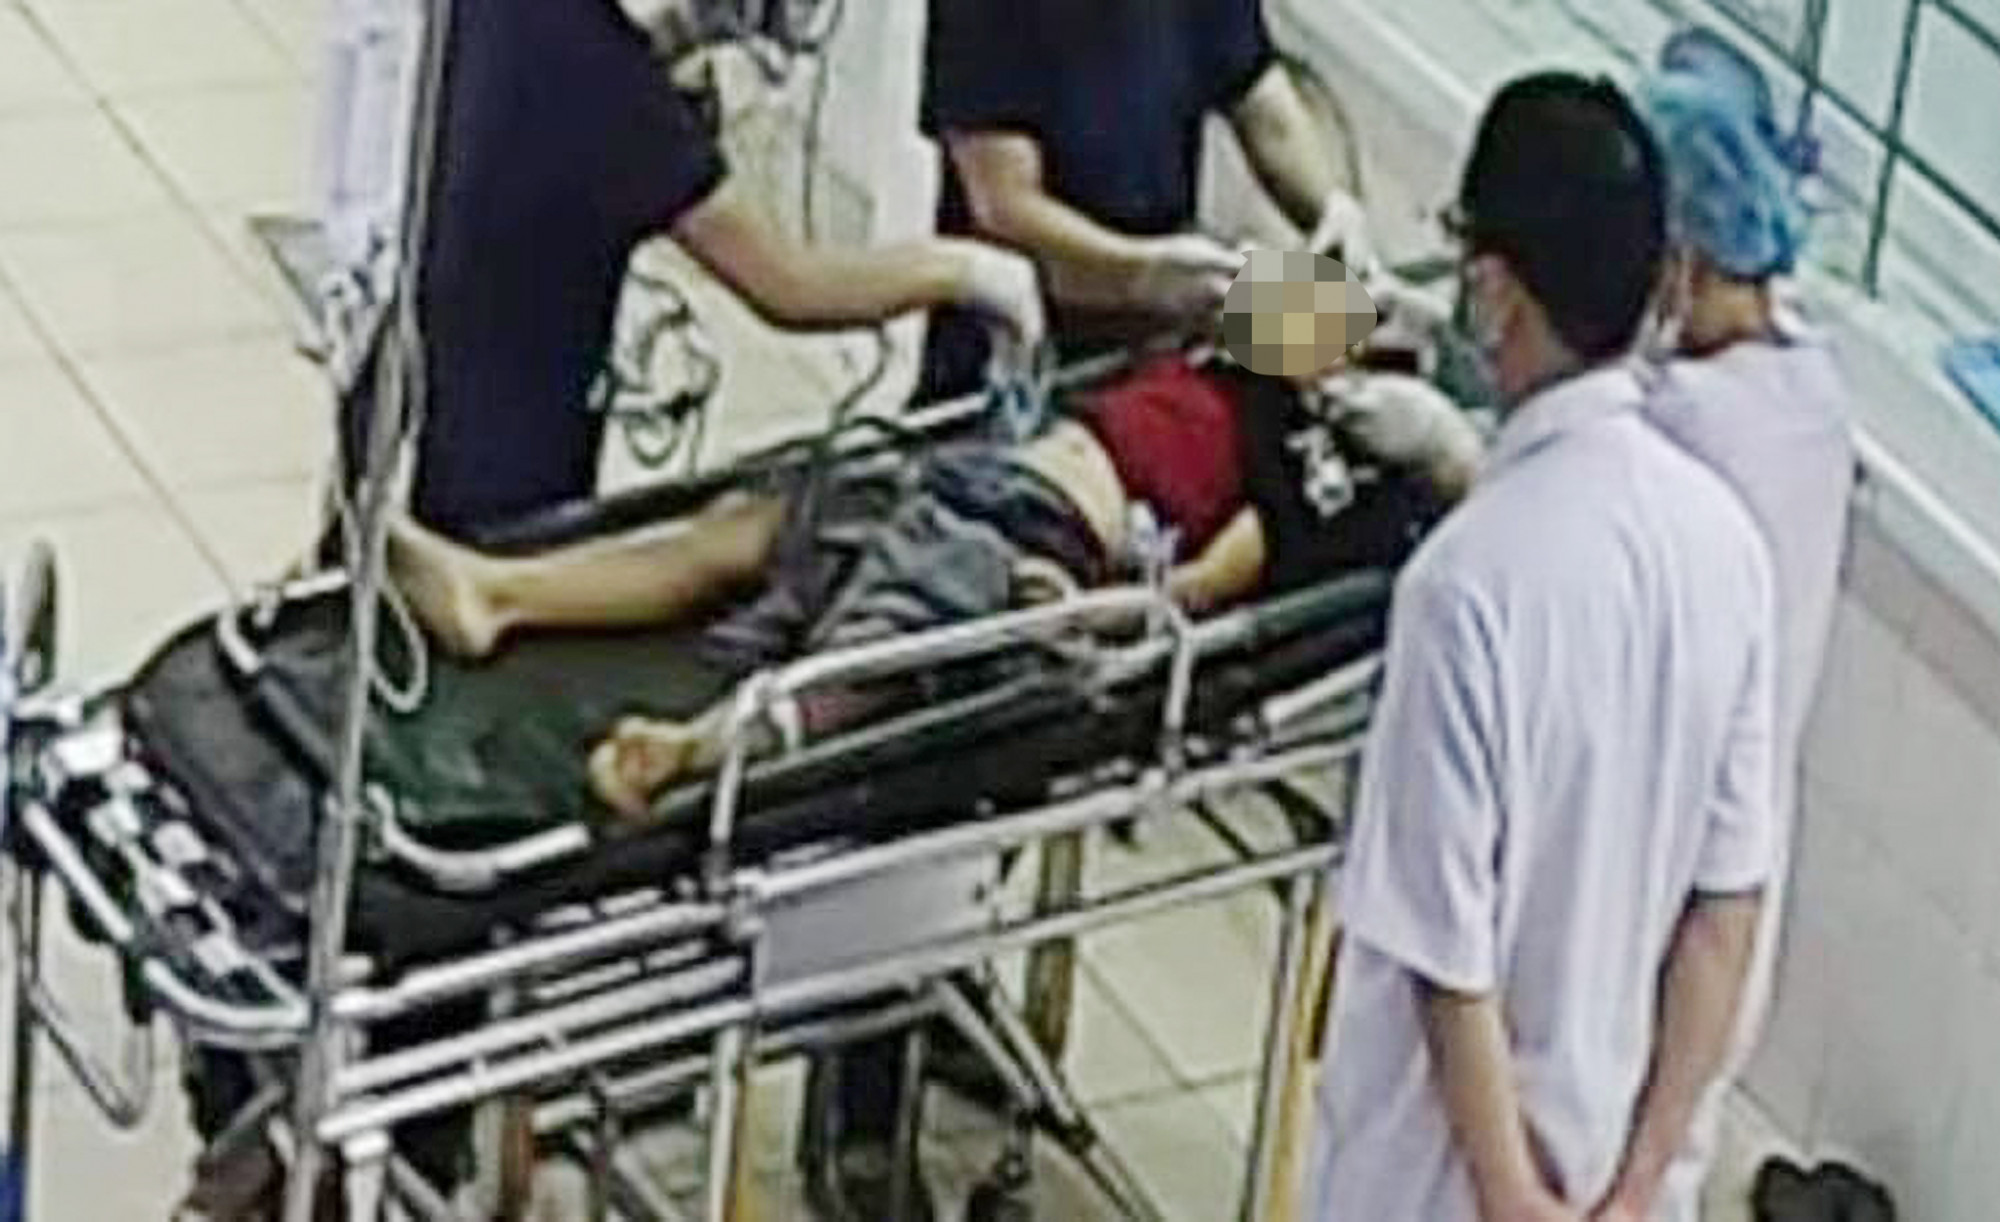 Bé Đ. được đưa vào bệnh viện cấp cứu song đã tử vong từ trước do vết thương quá nặng - Ảnh: Hồng Lĩnh